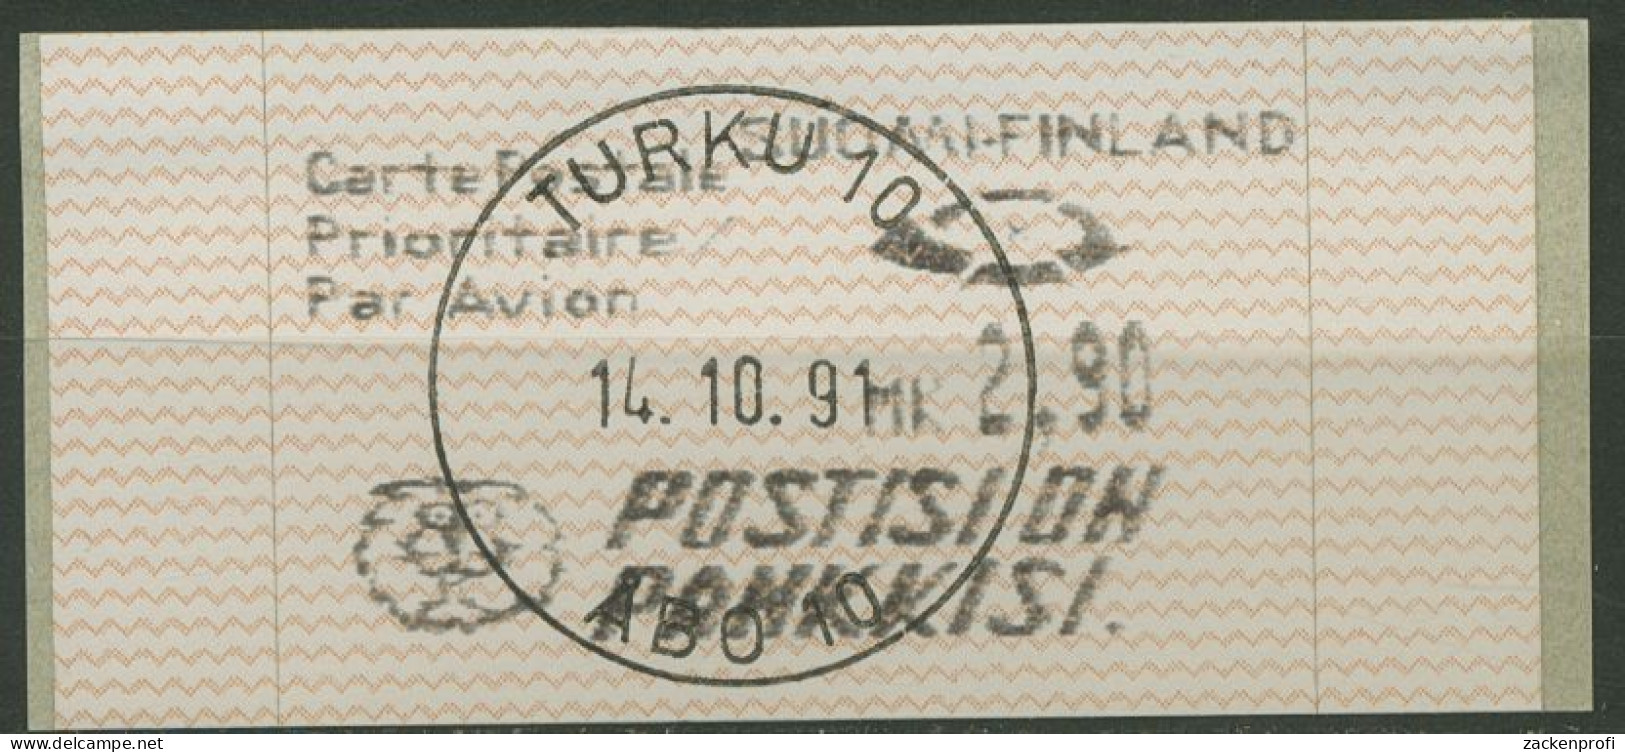 Finnland Automatenmarken 1991 2,90 MK Einzelwert, ATM 10.2 Z 3 Gestempelt - Vignette [ATM]